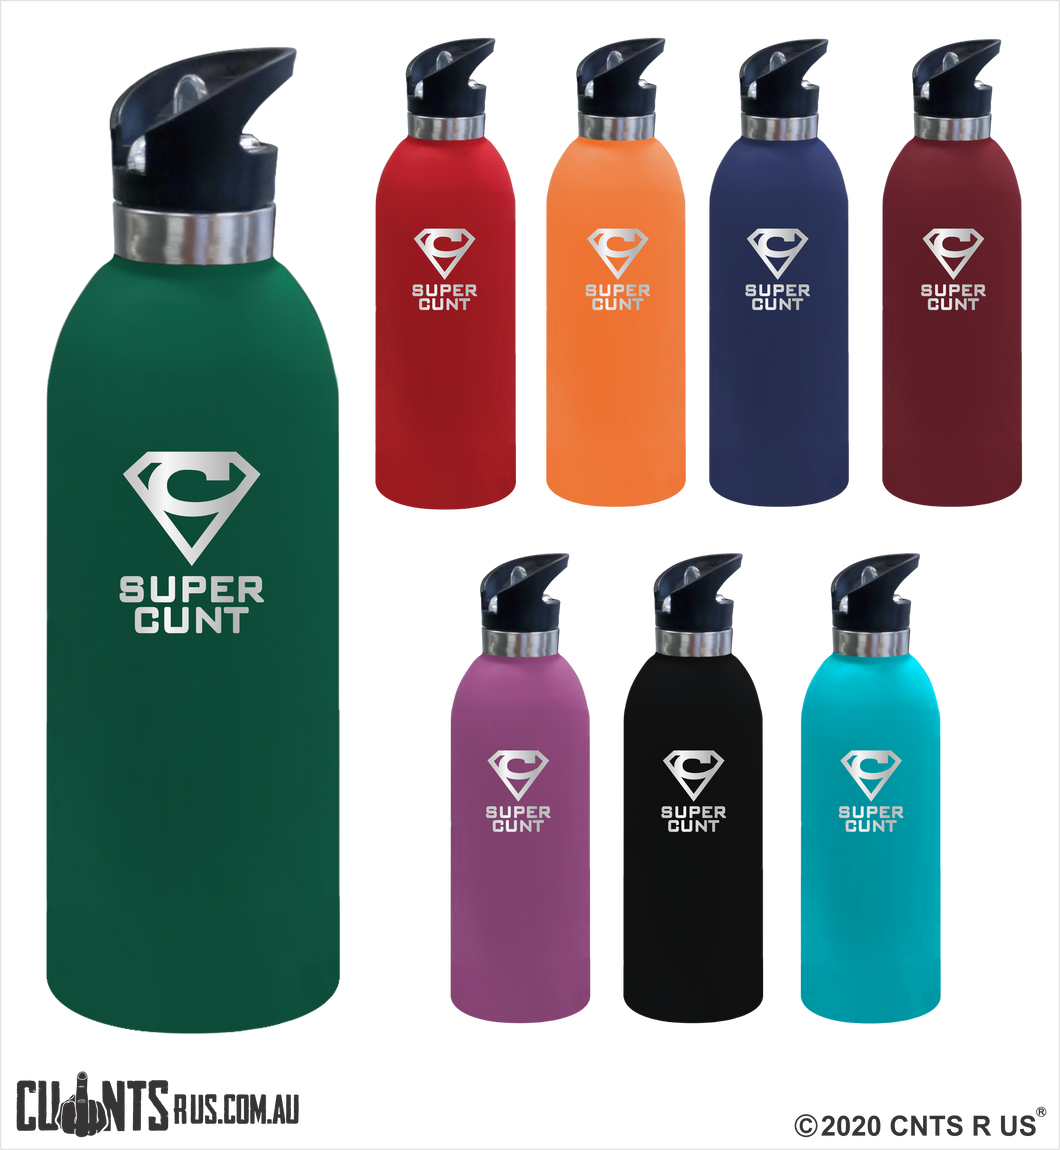 Super Cunt 1 Litre Drink Bottle Laser Engraved Gift - CRU08-68-21001